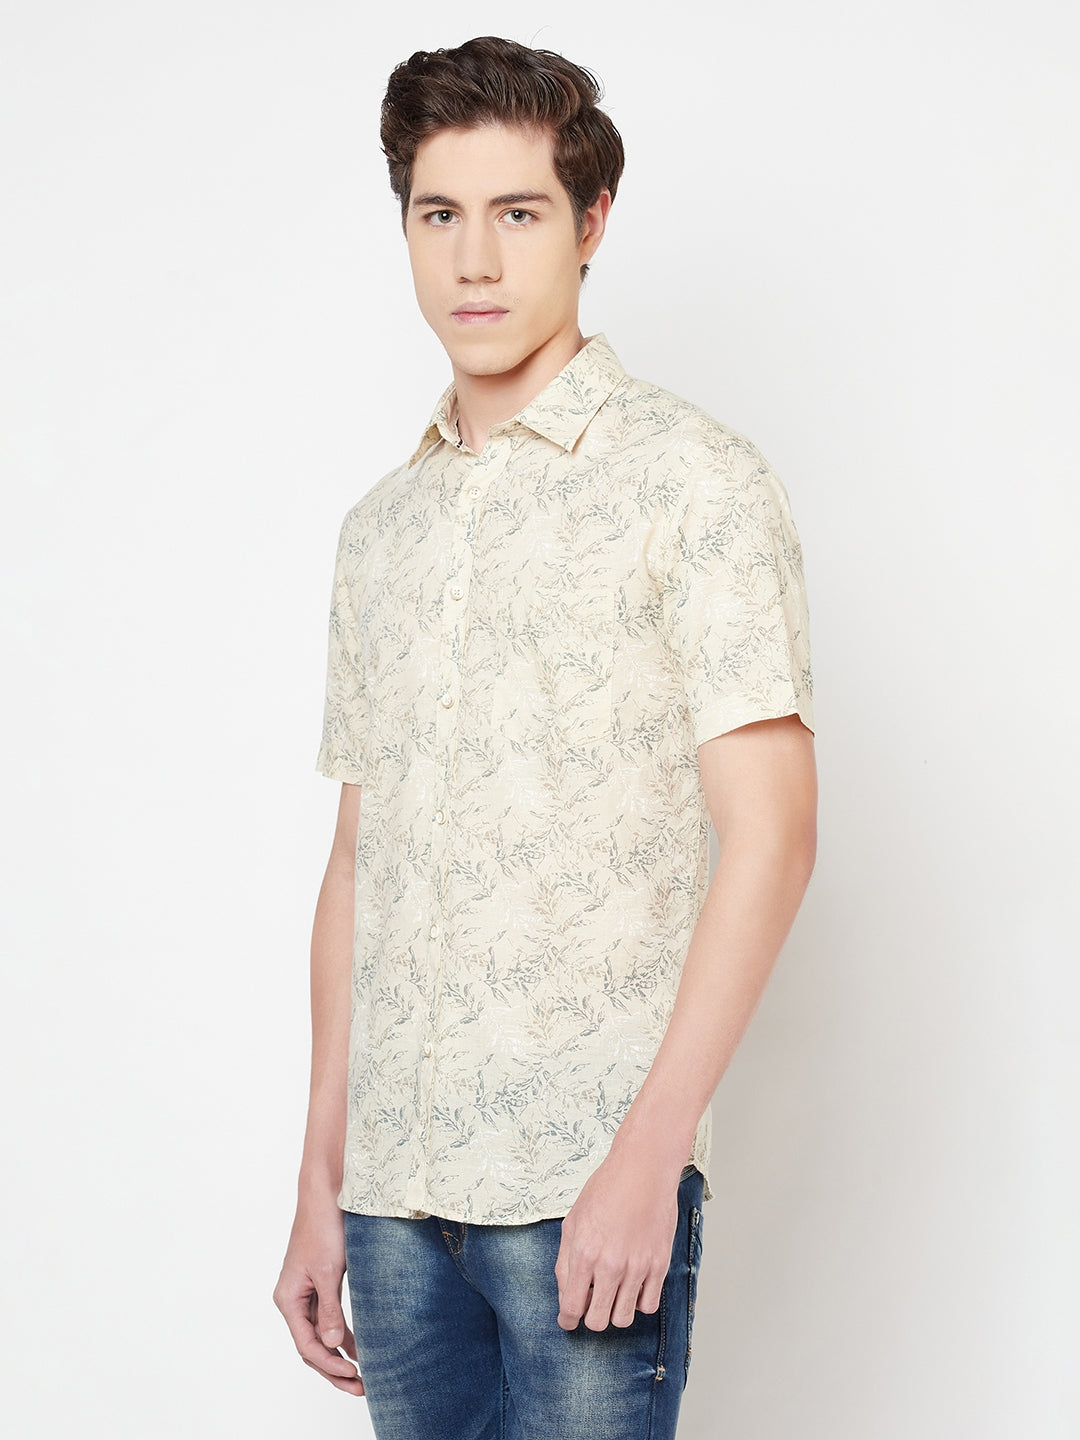 Beige Floral Linen Shirt - Men Shirts